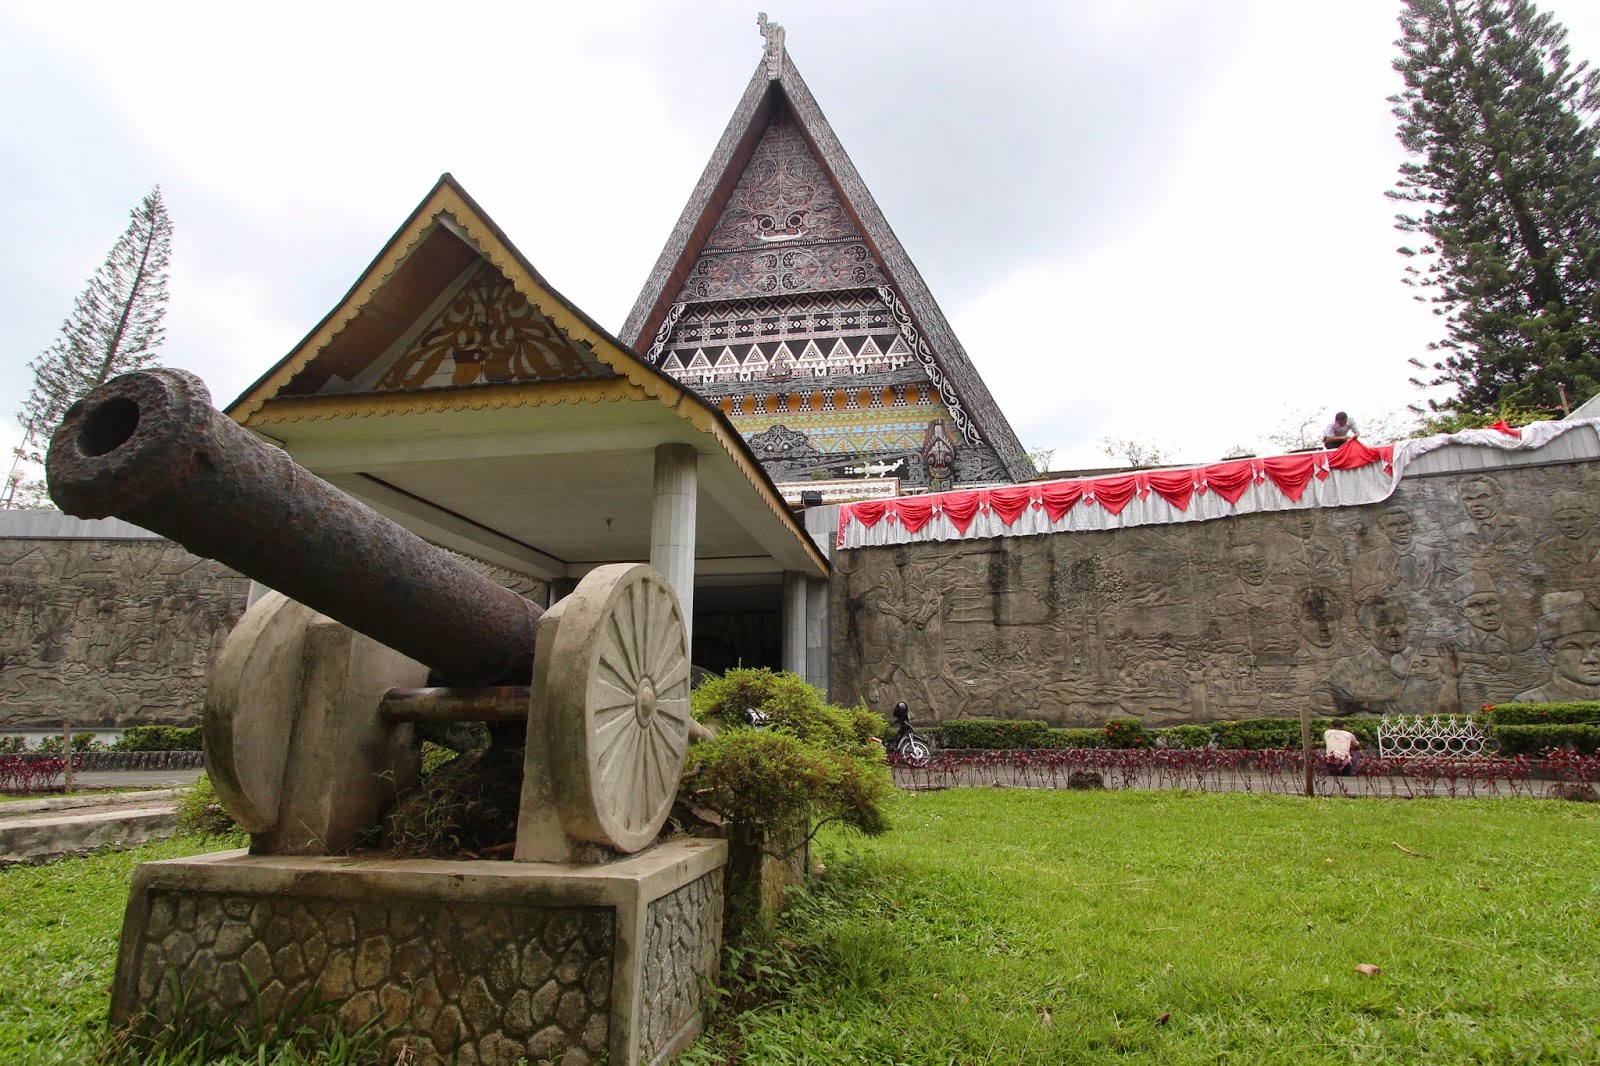 Empat Museum di Kota Medan Yang Cocok Untuk Wisata Edukasi Bersama Keluarga